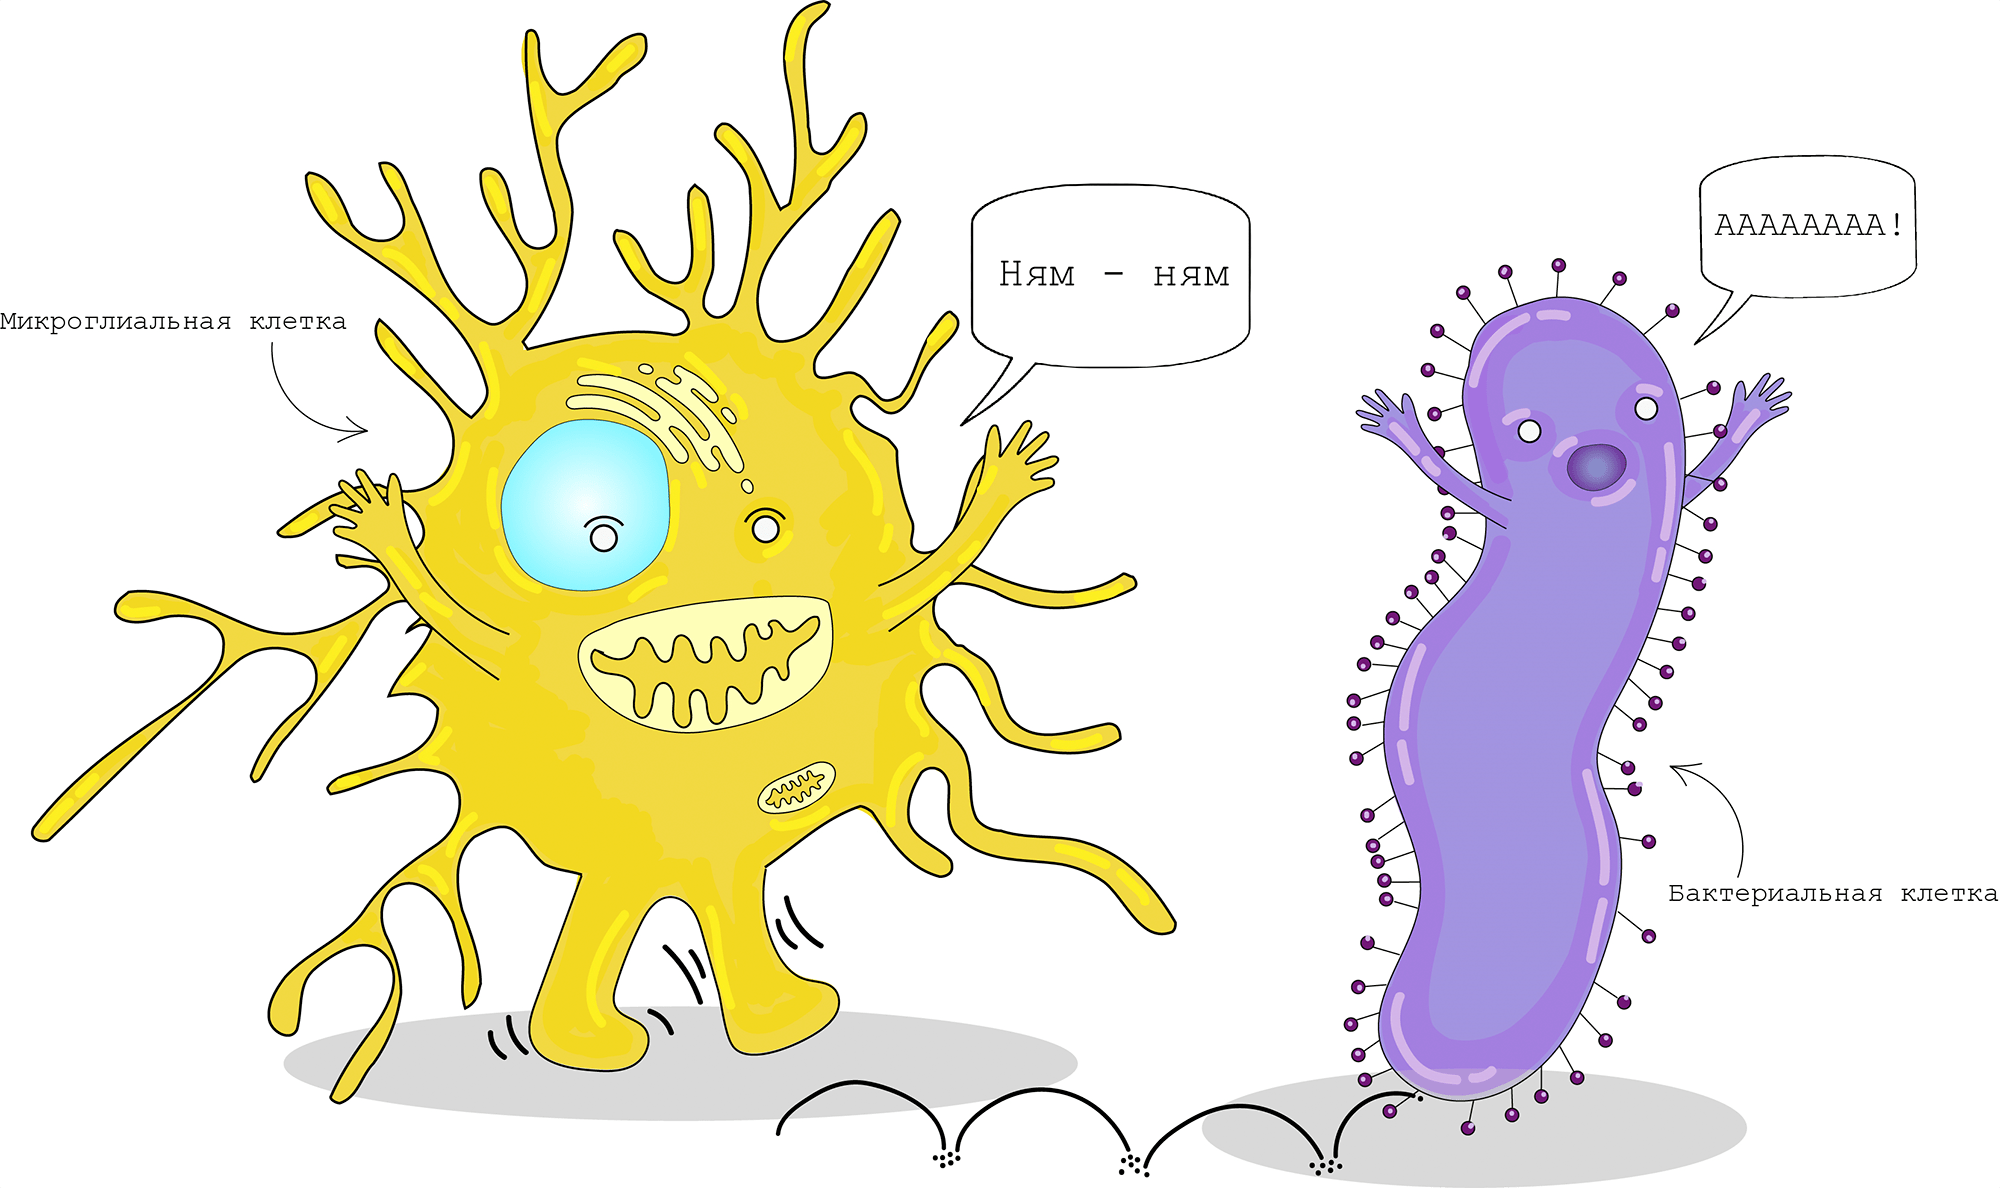 Фагоцитирование бактерии микроглиальной клеткой